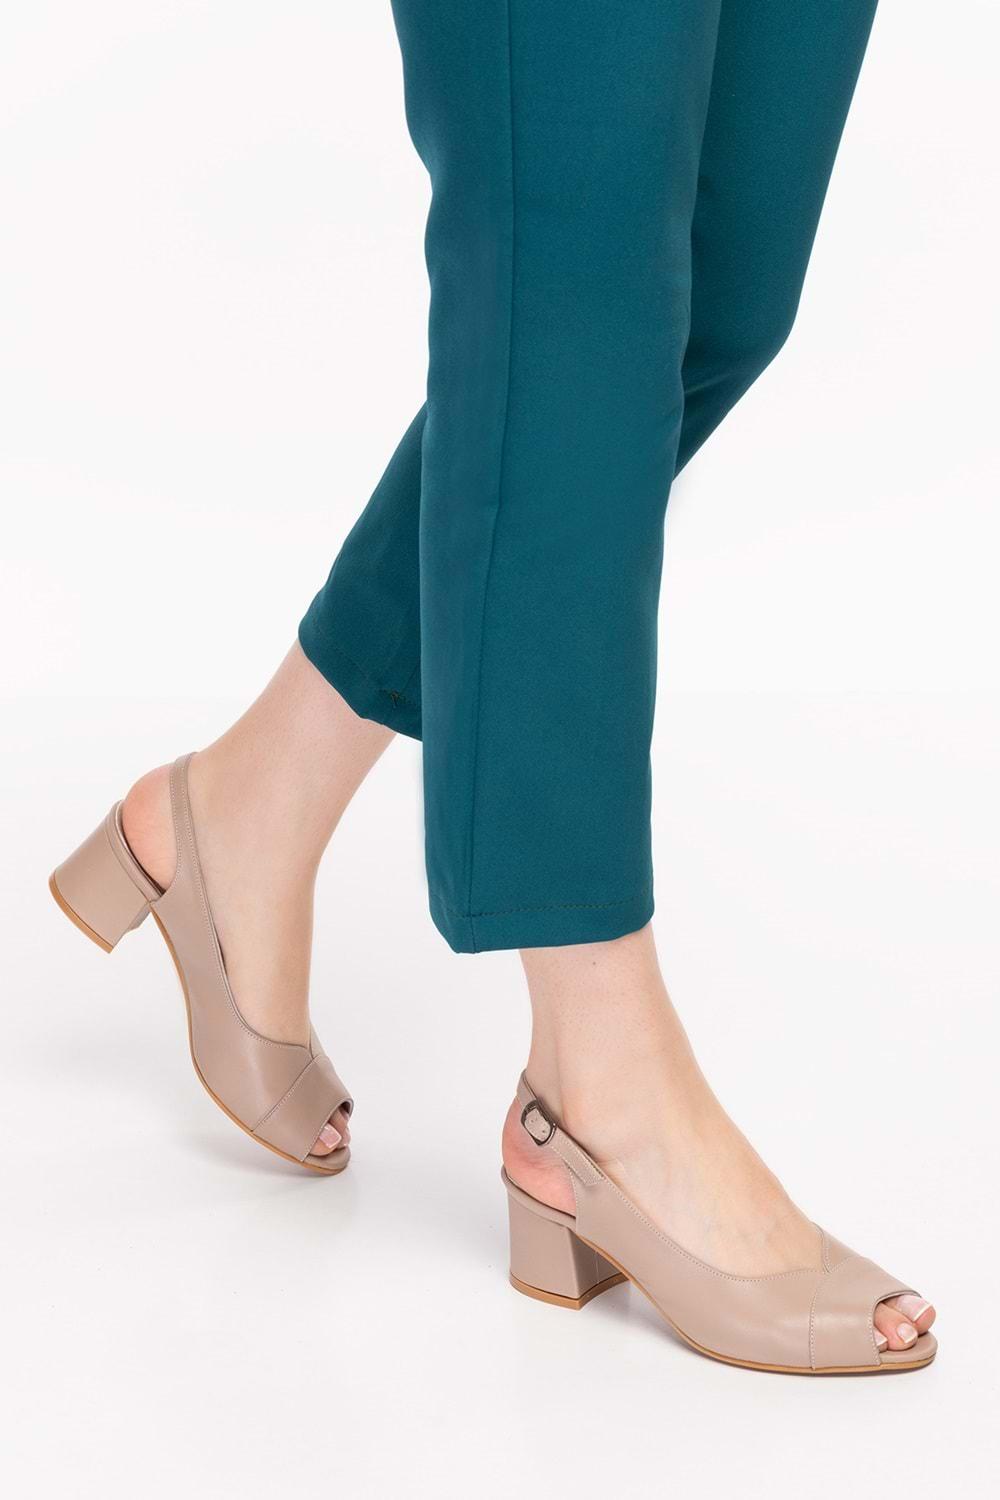 Gondol Kadın Hakiki Deri Klasik Topuklu Ayakkabı şhn.836 - Vizon - 36